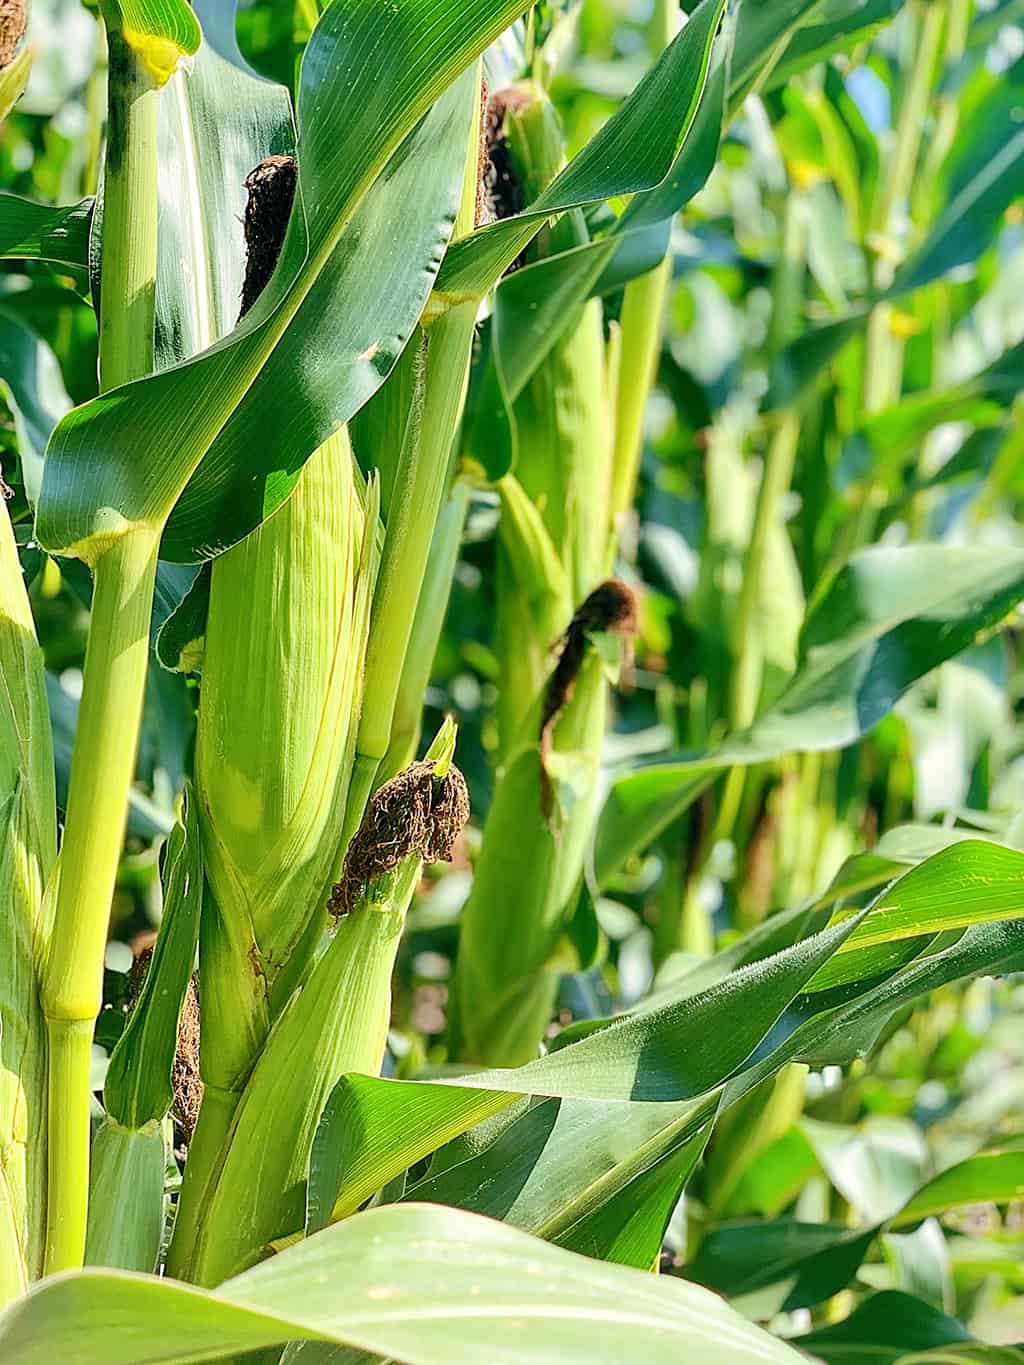 North Dakota Corn